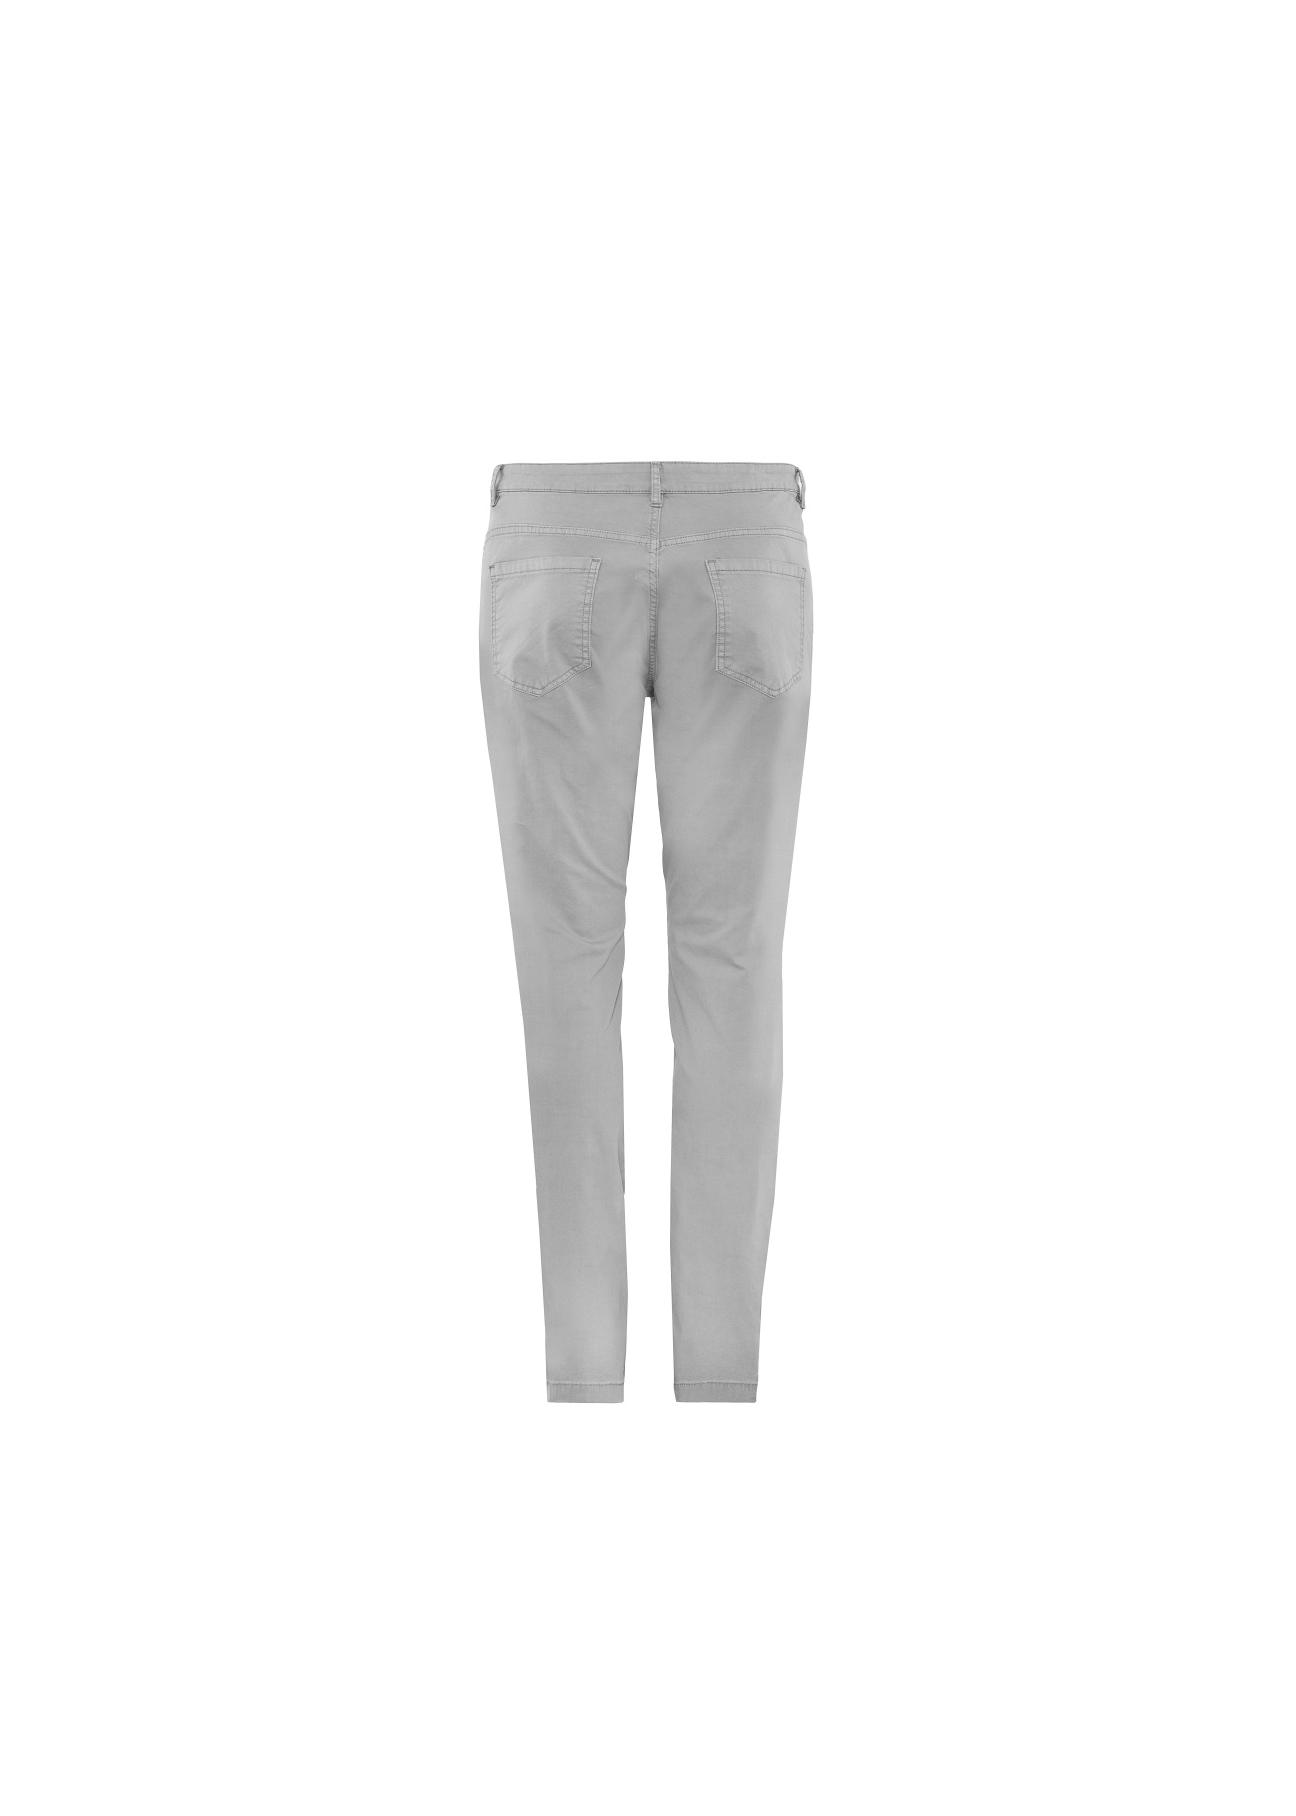 Spodnie męskie SPOMT-0052-91(W20)